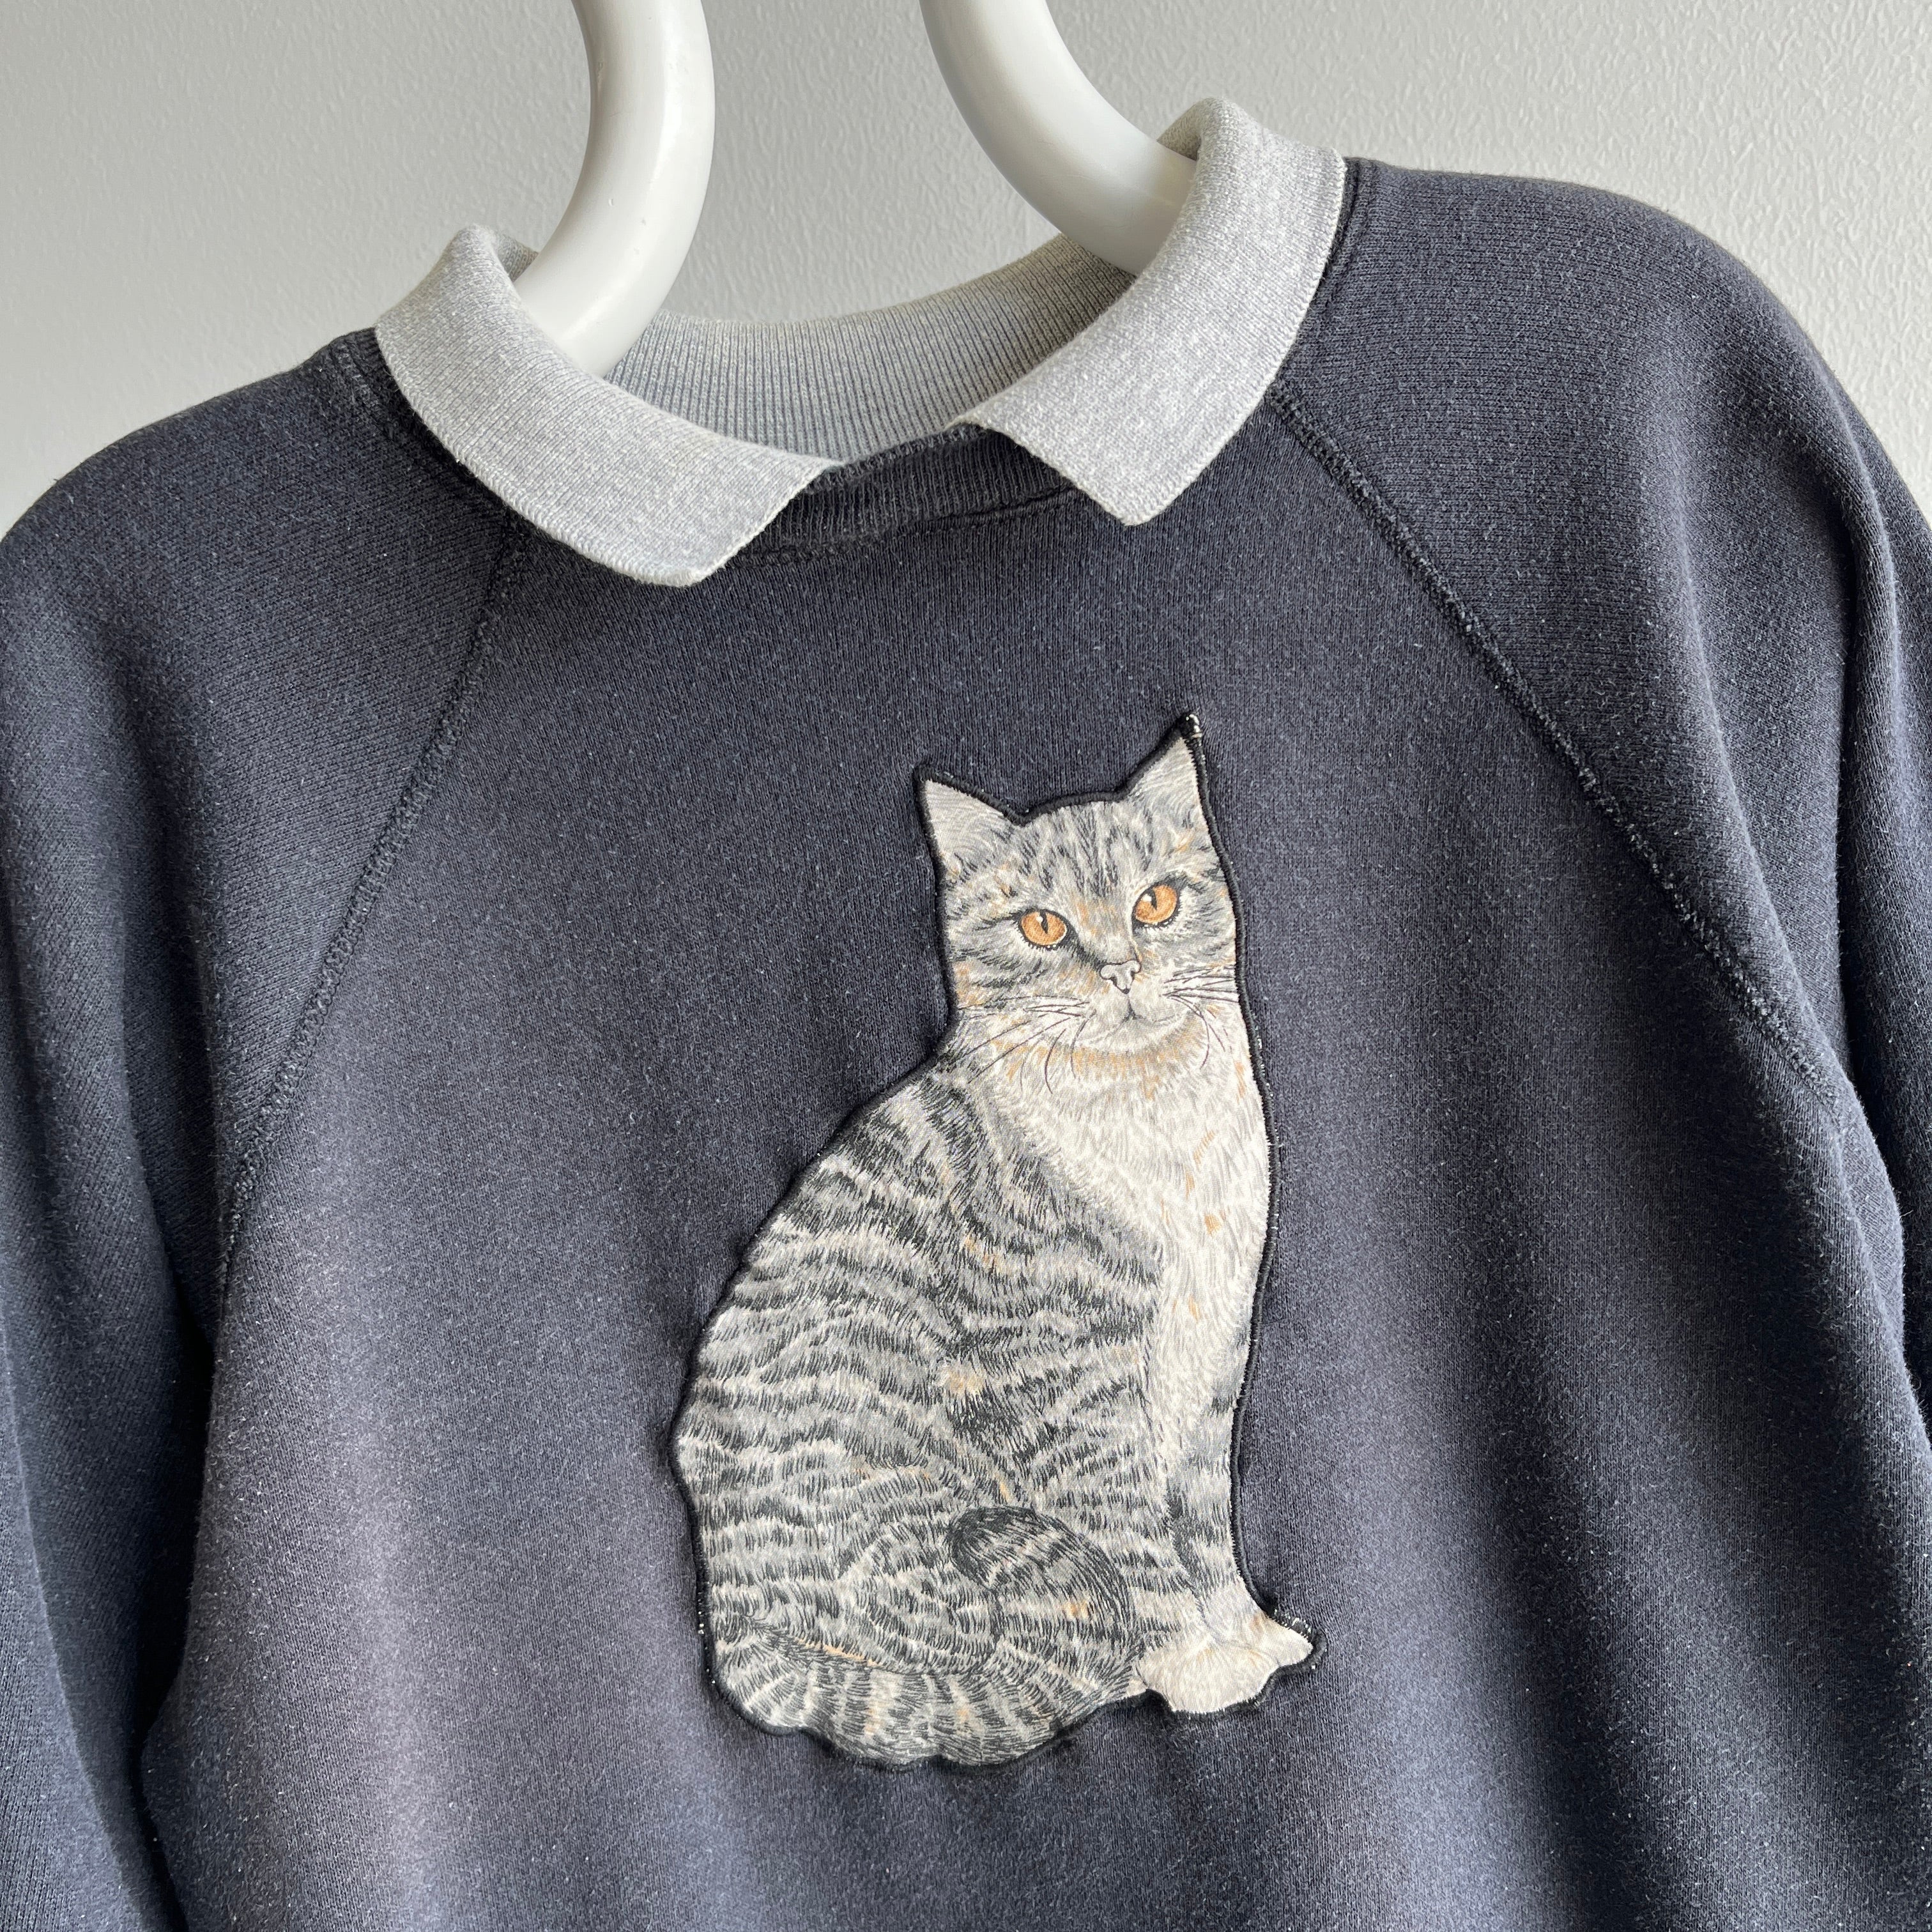 1980s F(el)ine Work of Art DIY Collar Sweatshirt with Ruffled Sleeves - OMFG